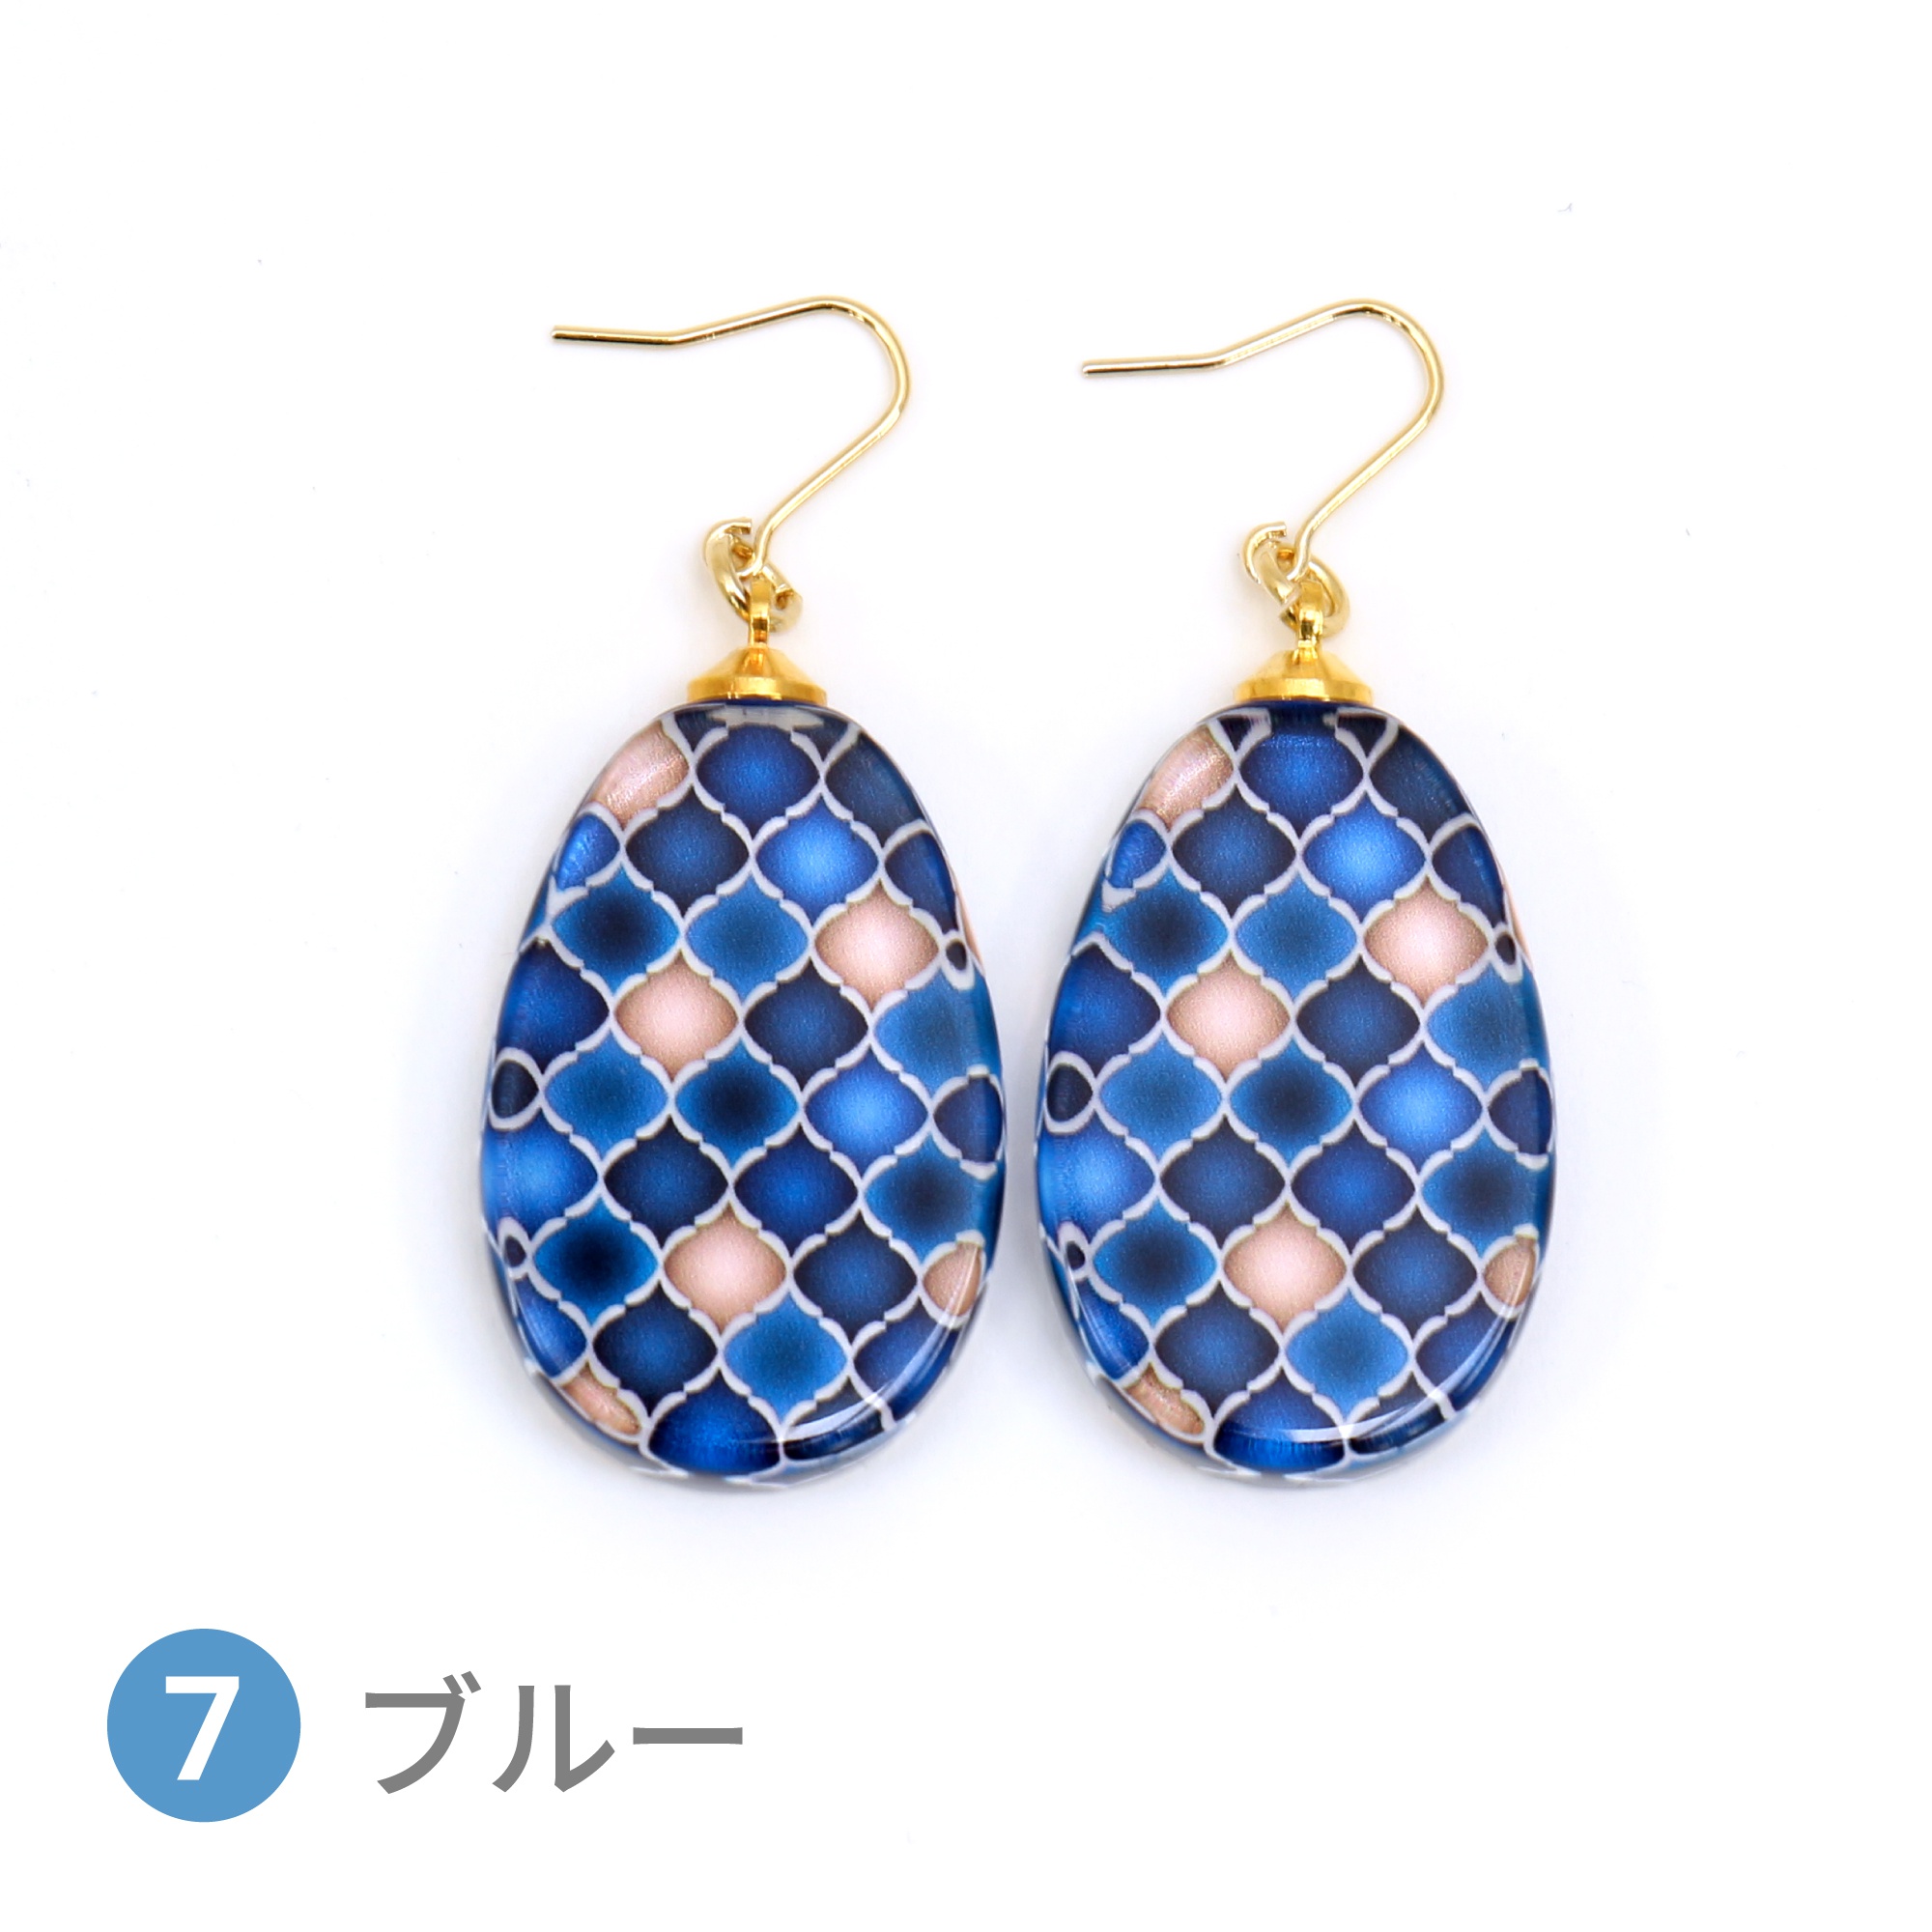 Glass accessories Pierced Earring MOROCCAN blue drop shape